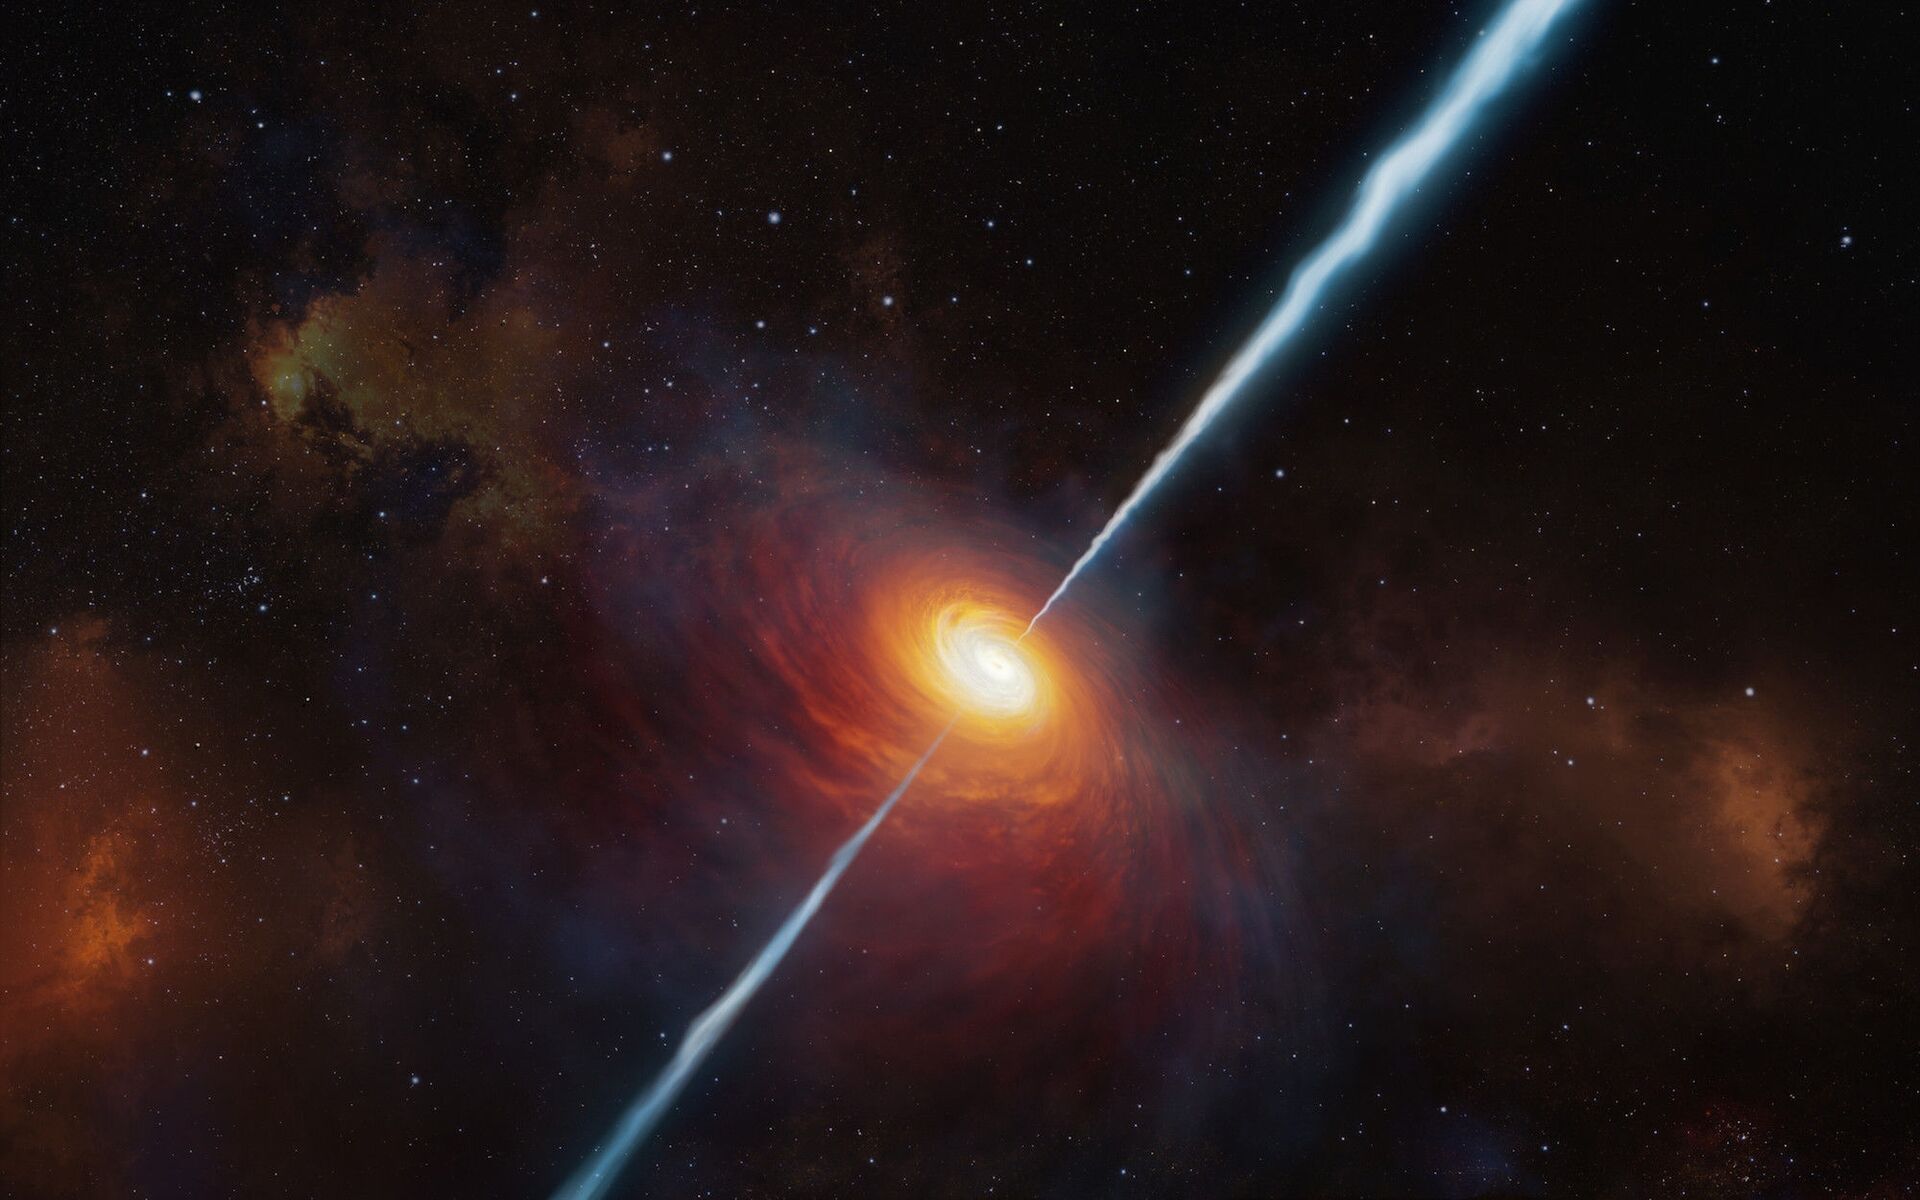 Descoberto quasar cuja luz levou 13 bilhões de anos para chegar até nós (FOTO) - Sputnik Brasil, 1920, 09.03.2021